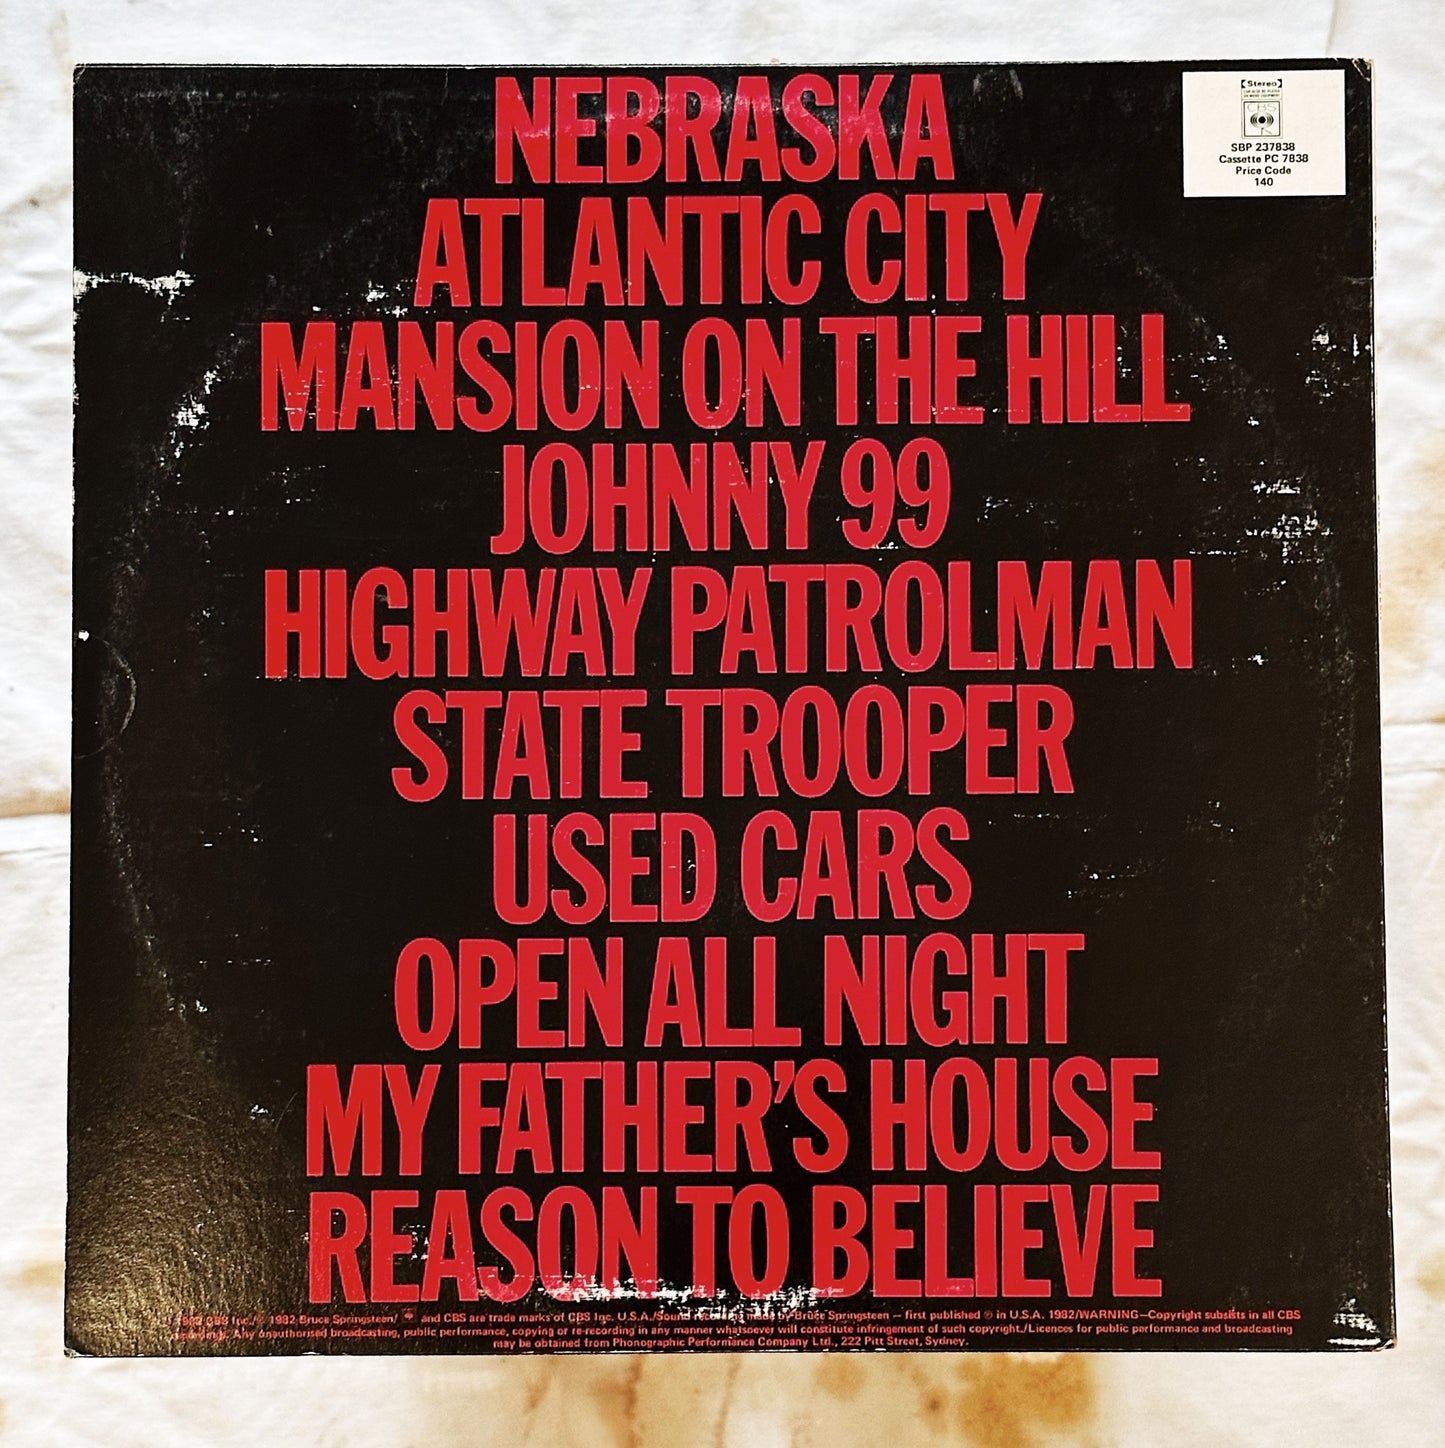 Bruce Springsteen / Nebraska LP